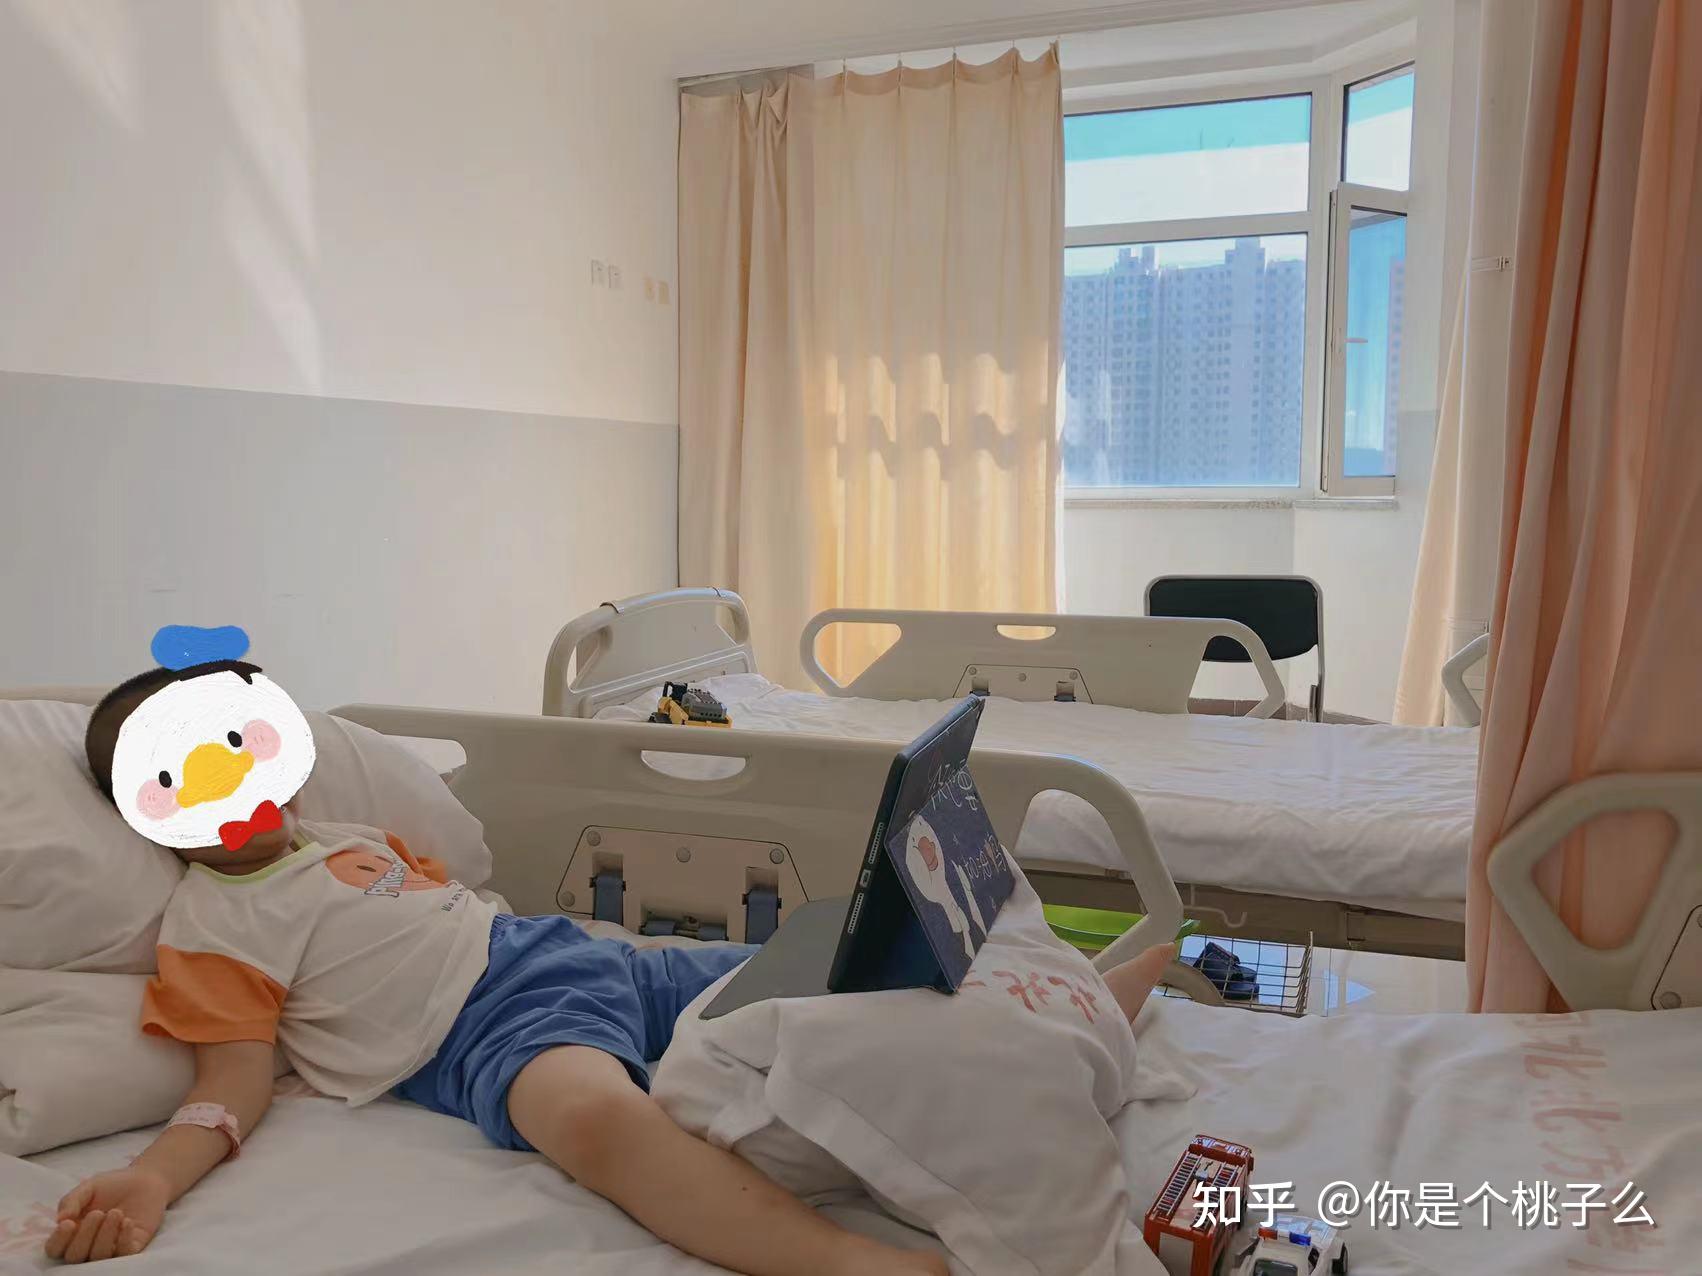 一疫情风险地区患儿睾丸扭转，江西省儿童医院勇担当为其实施手术-医院汇-丁香园